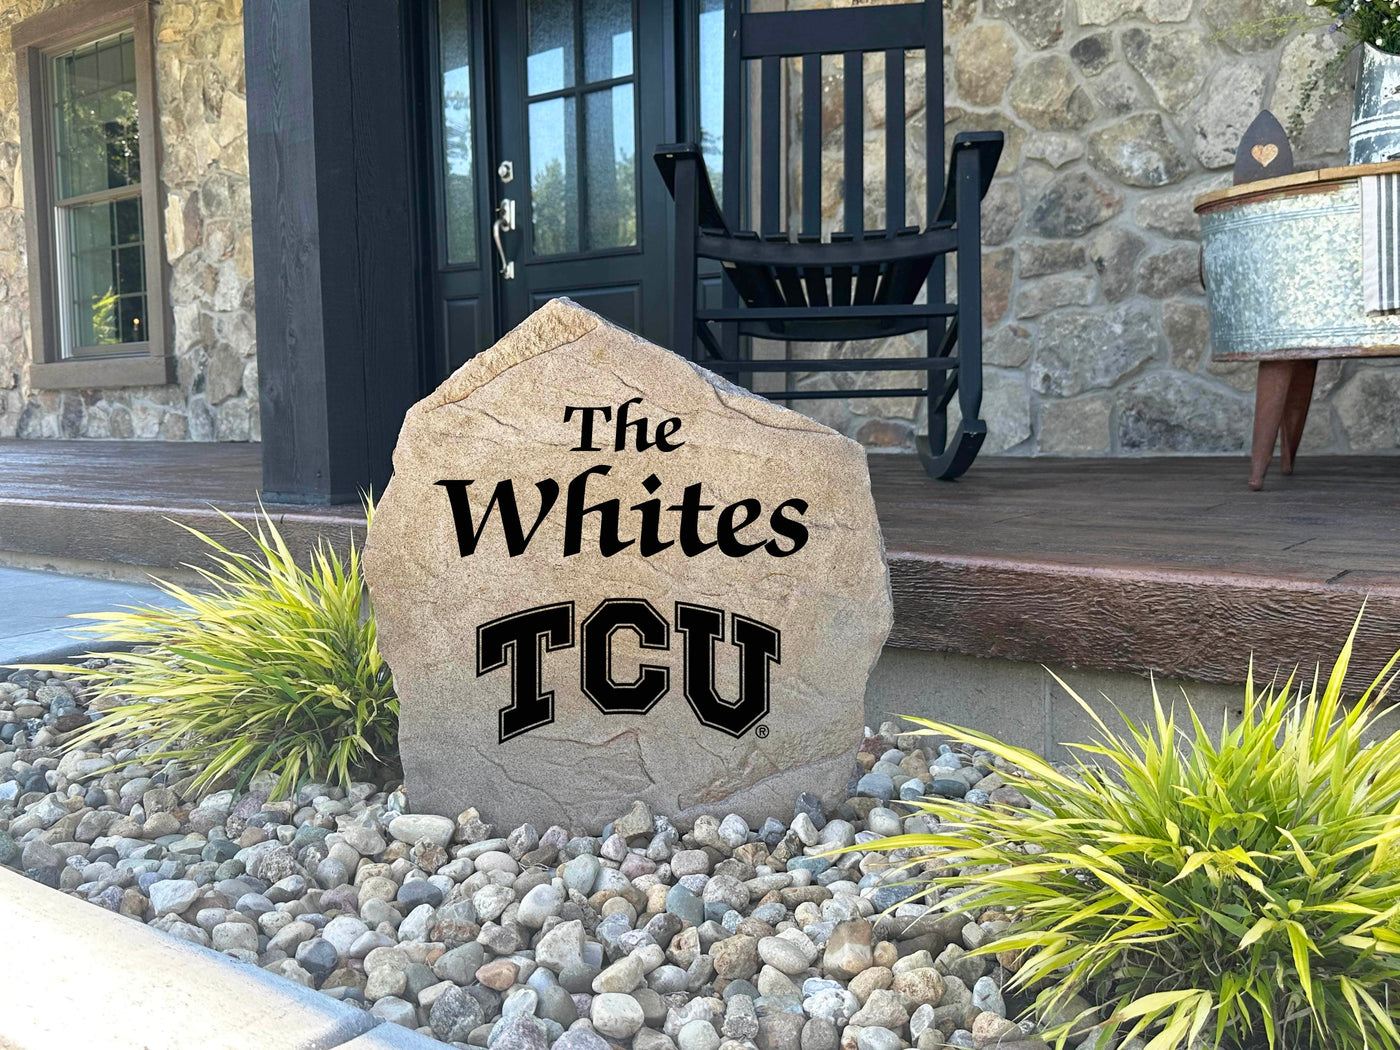 Texas Christian University Name Stone